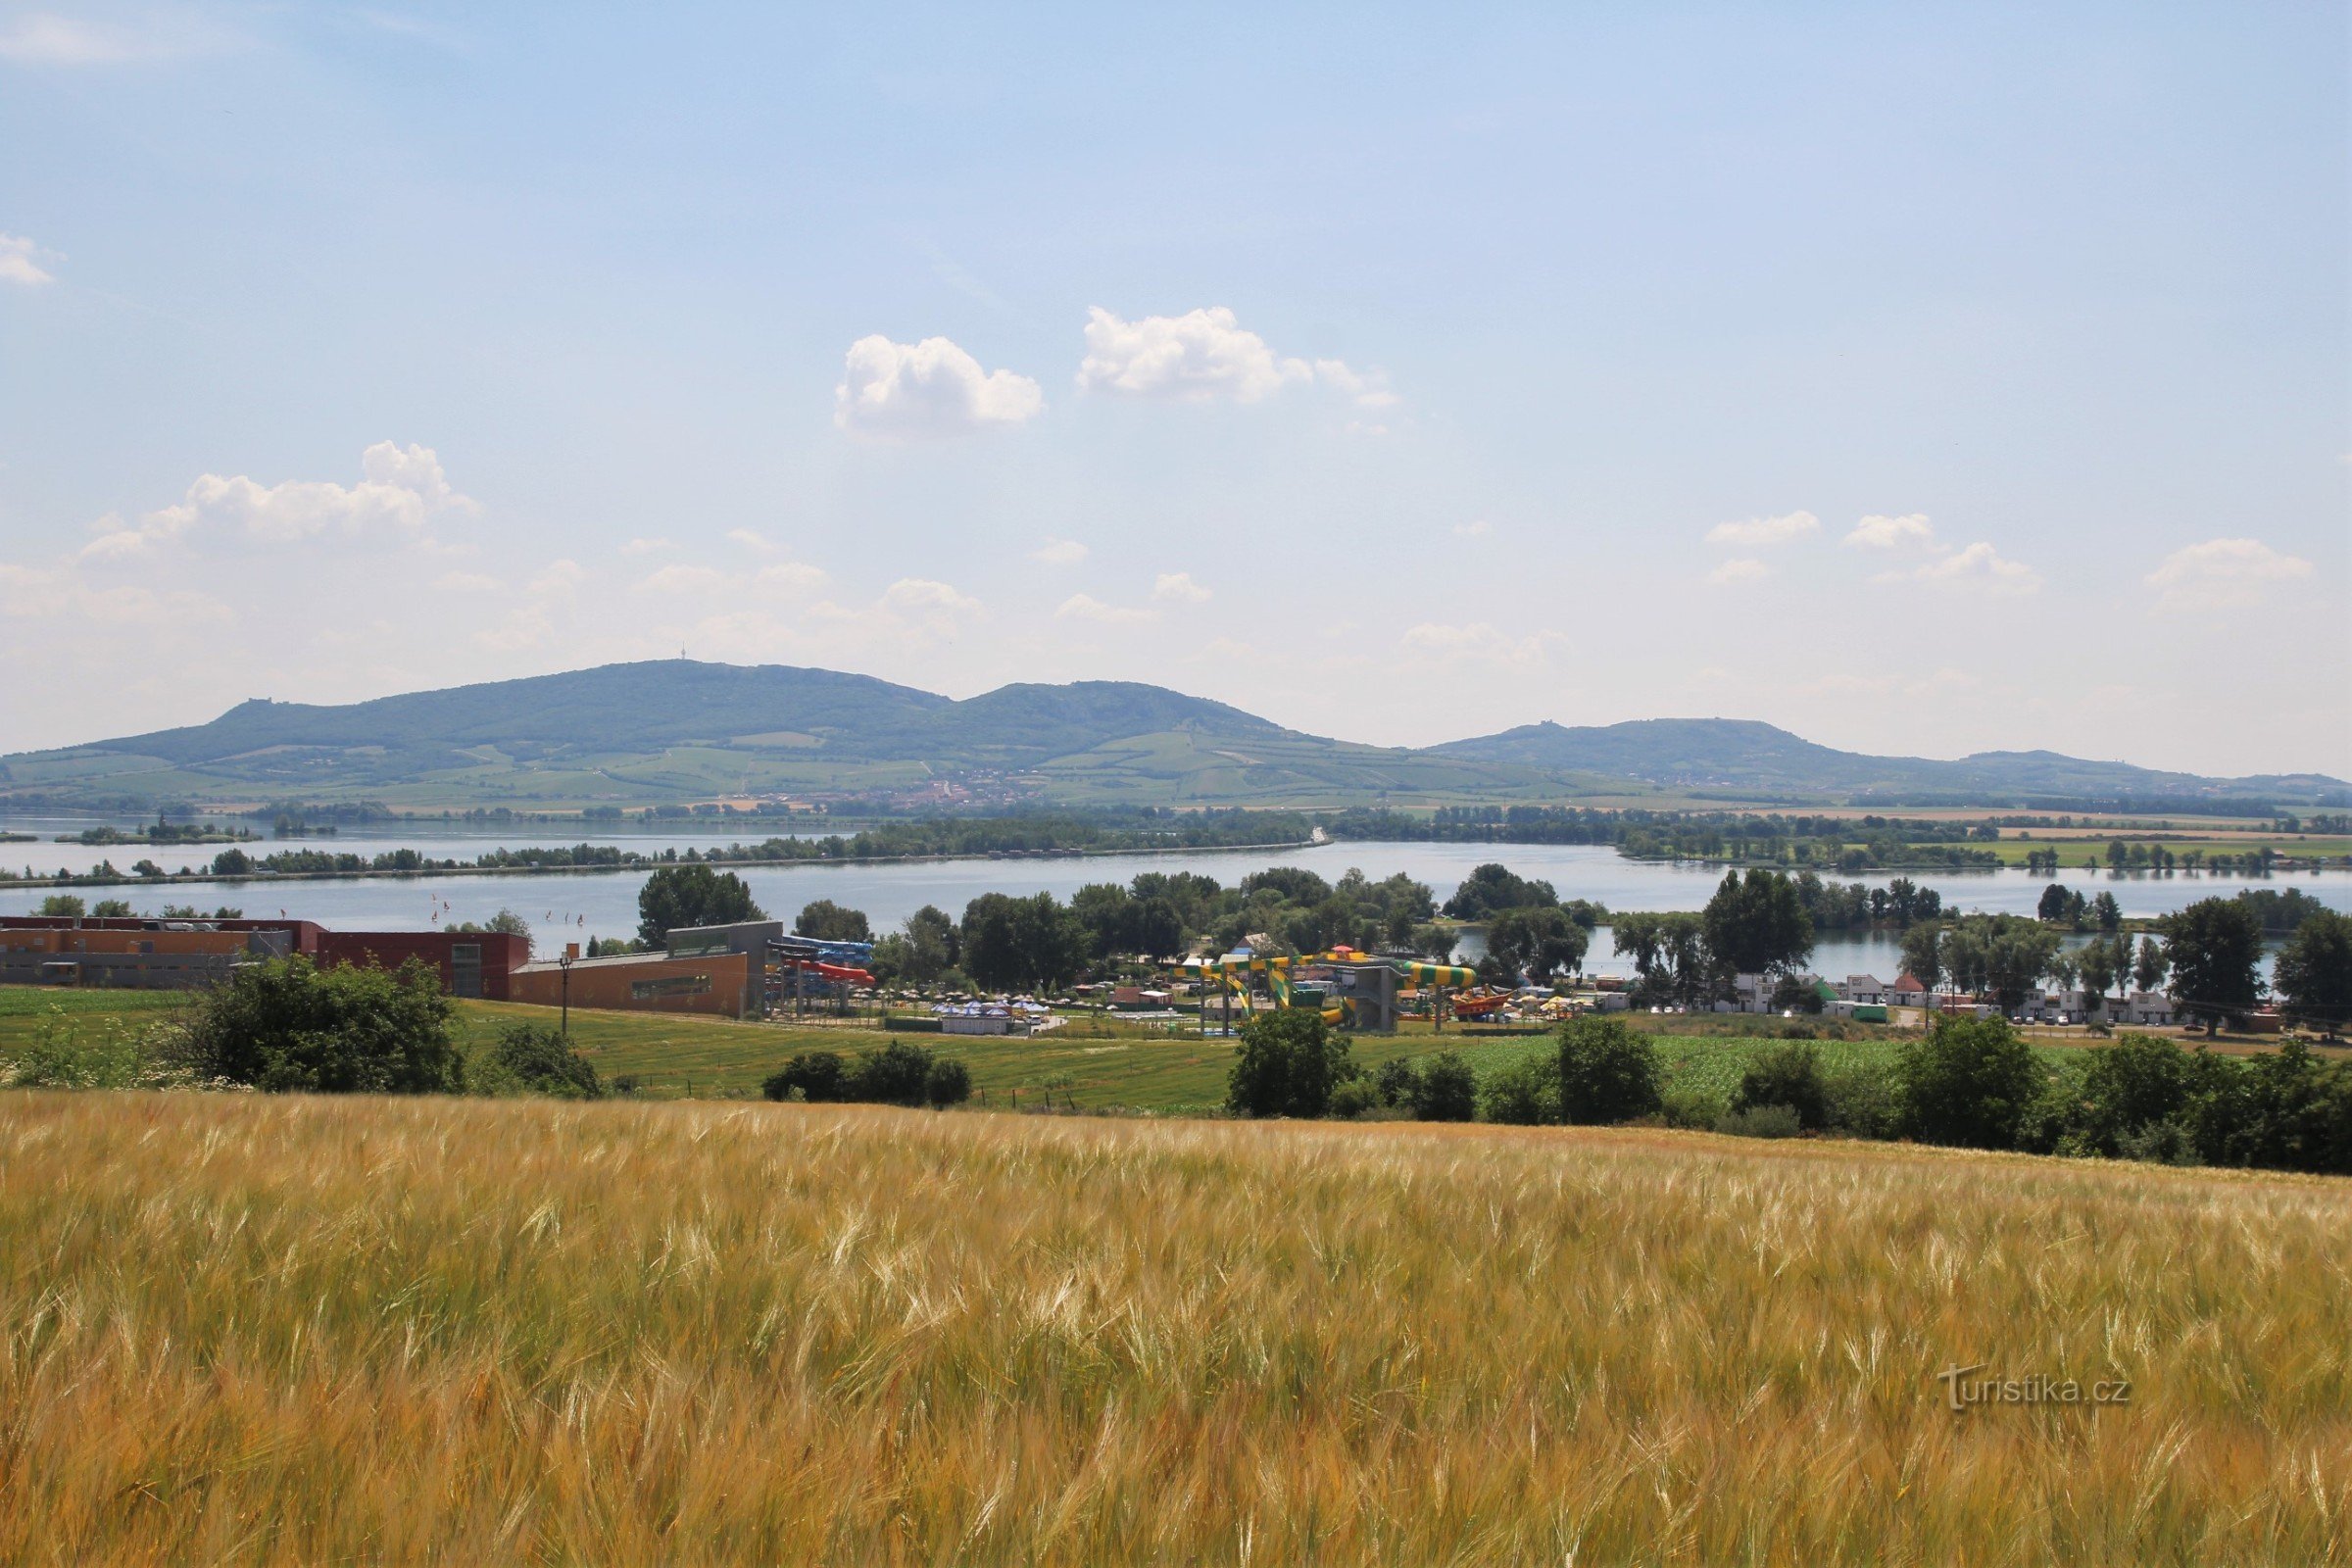 Den fortsætter langs den specialbyggede vej rundt om Aqualand Moravia med panoramaet af Pálava i horisonten